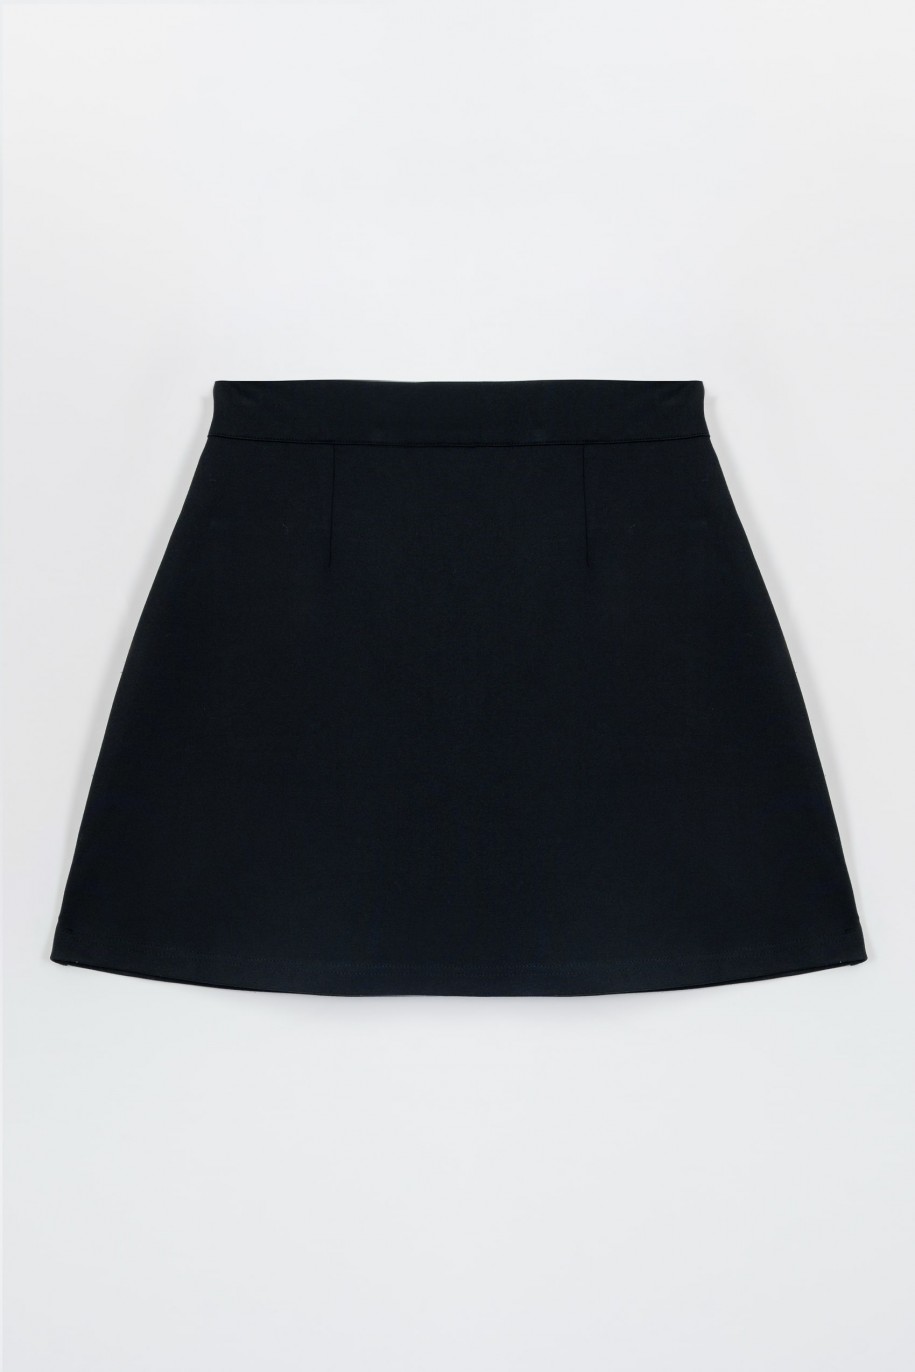 Czarna spódnica mini z przestrzennymi kieszeniami - 47357